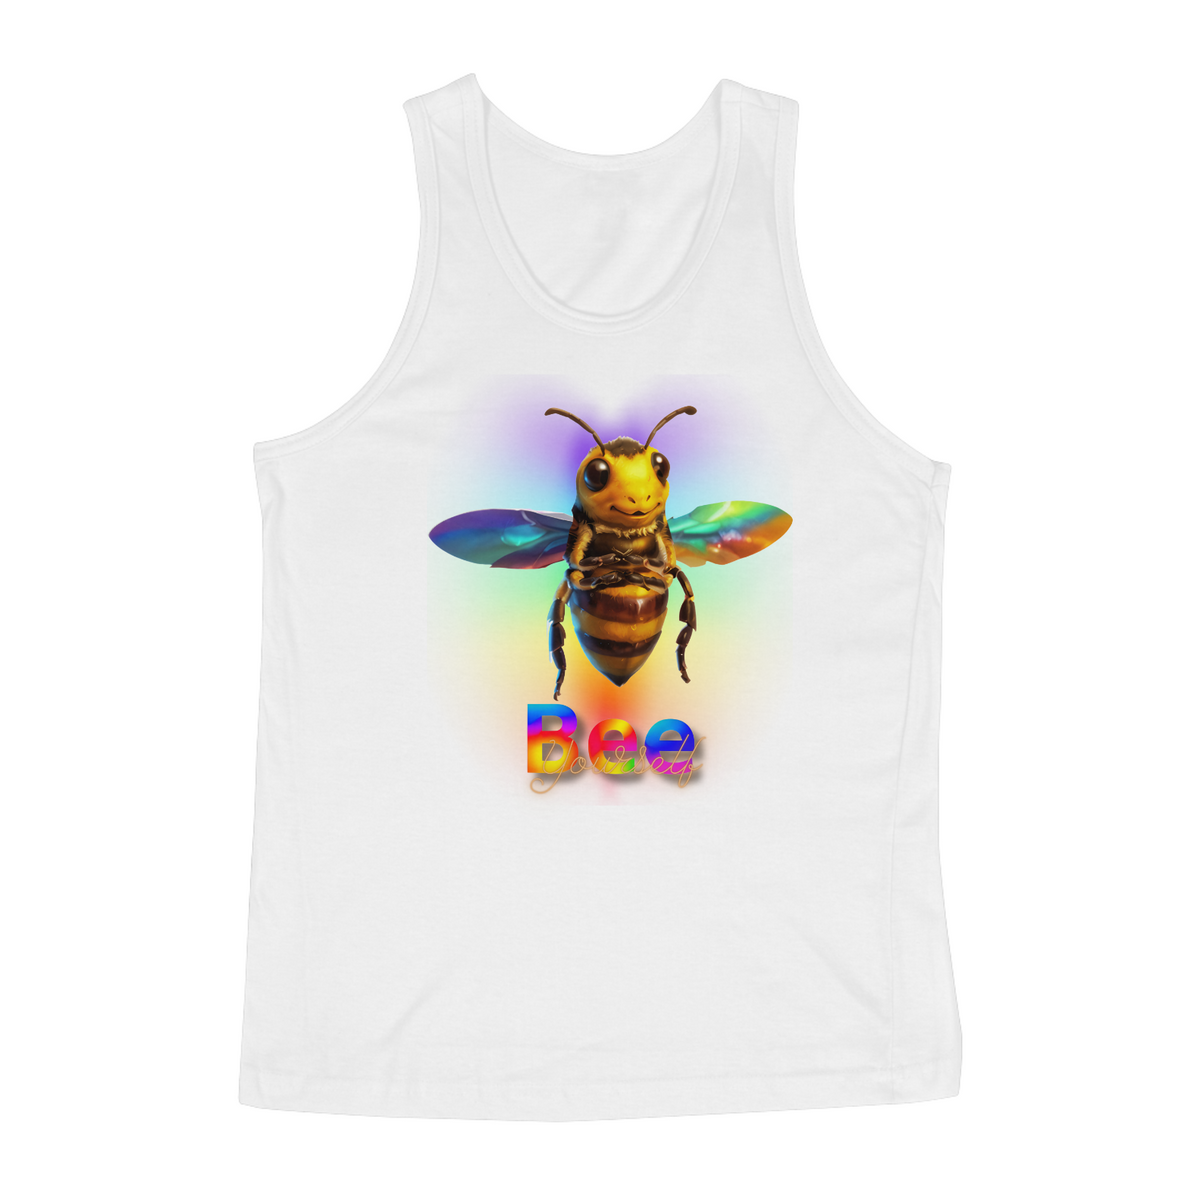 Nome do produto: Bee Yourself - Quality